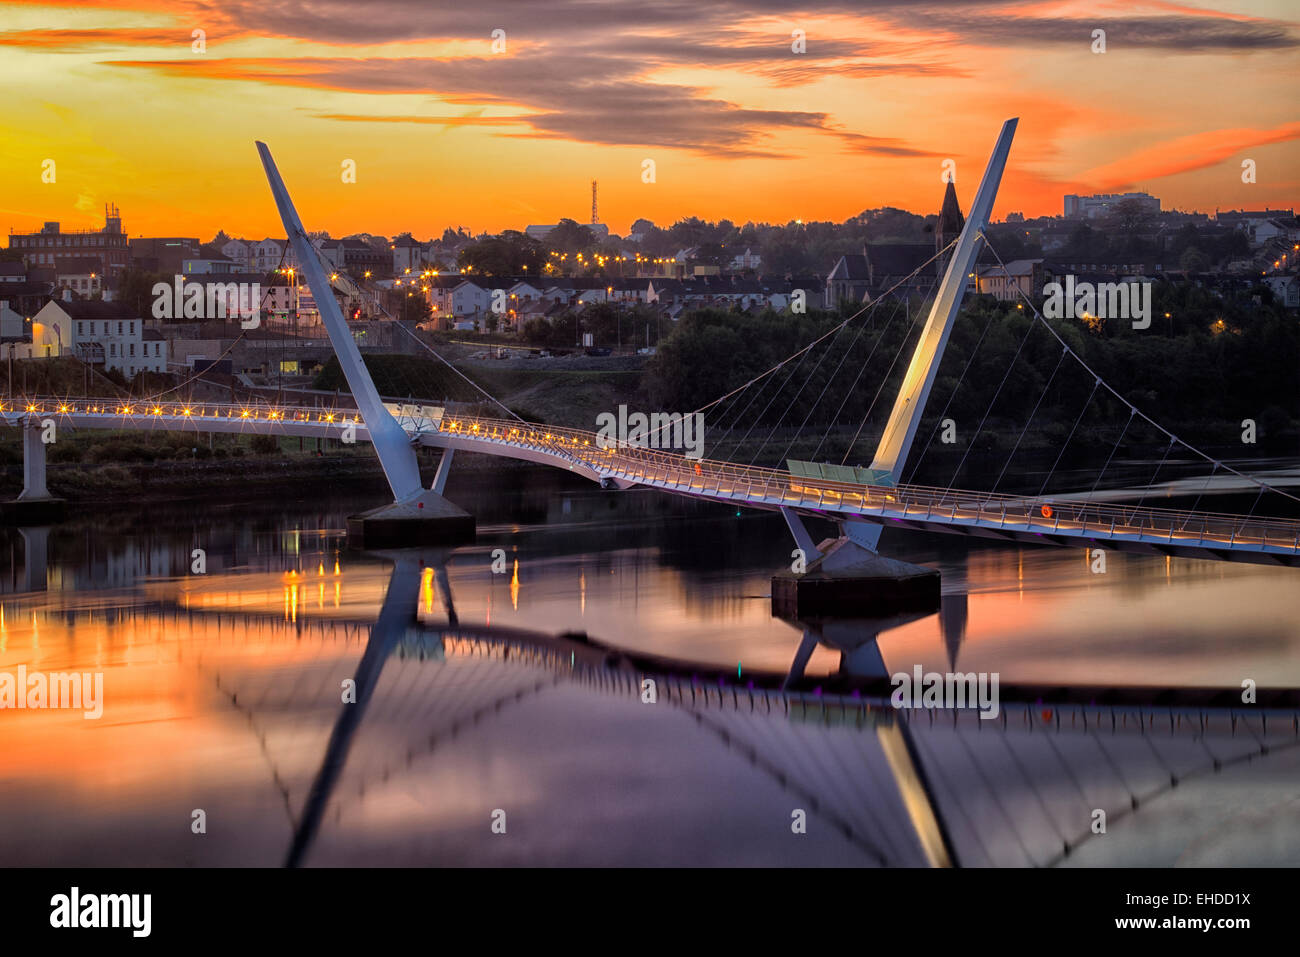 El Puente de la paz. Derry/Londonderry, Irlanda del Norte. Foto de stock